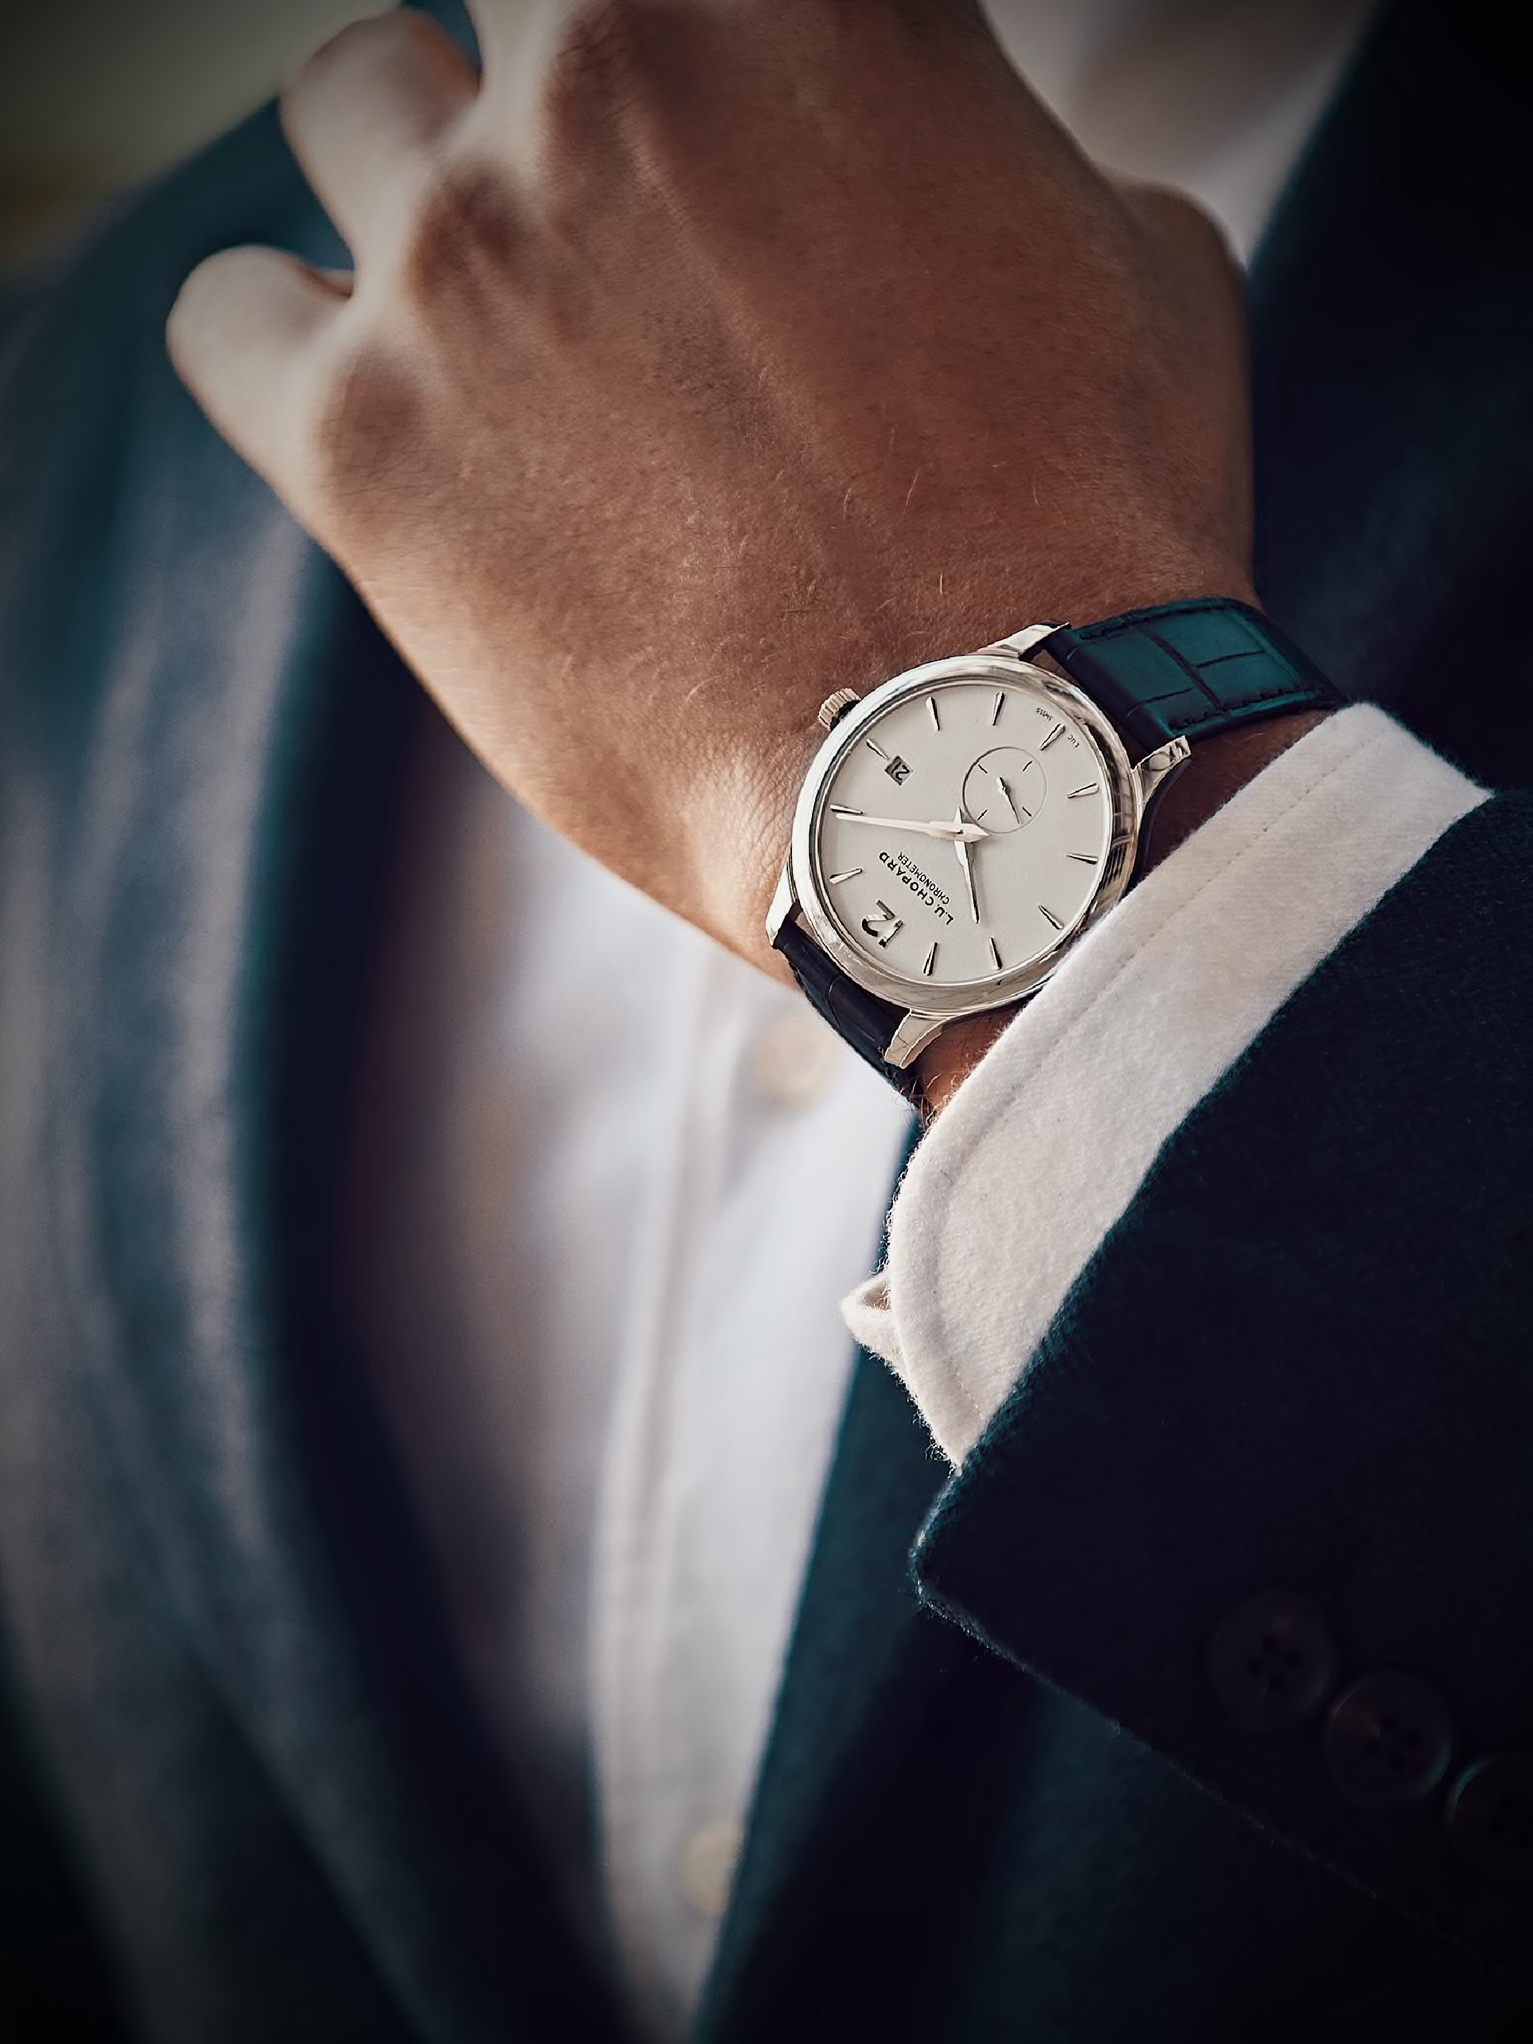 L.U.C Chopard Luxury Watch